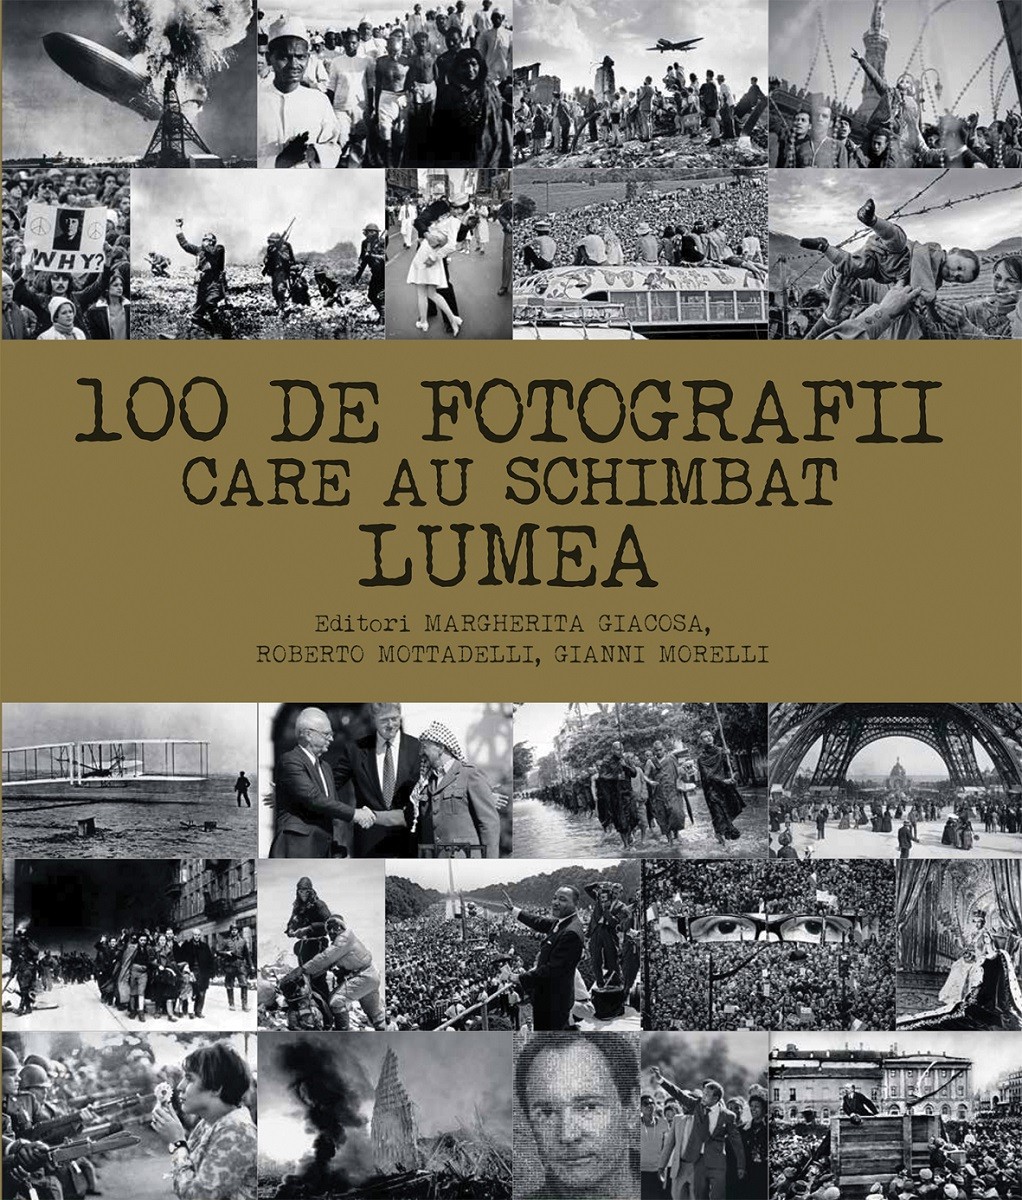 100 de fotografii care au schimbat lumea | Margherita Giacosa, Roberto Mottadelli, Gianni Morelli carturesti.ro imagine 2022